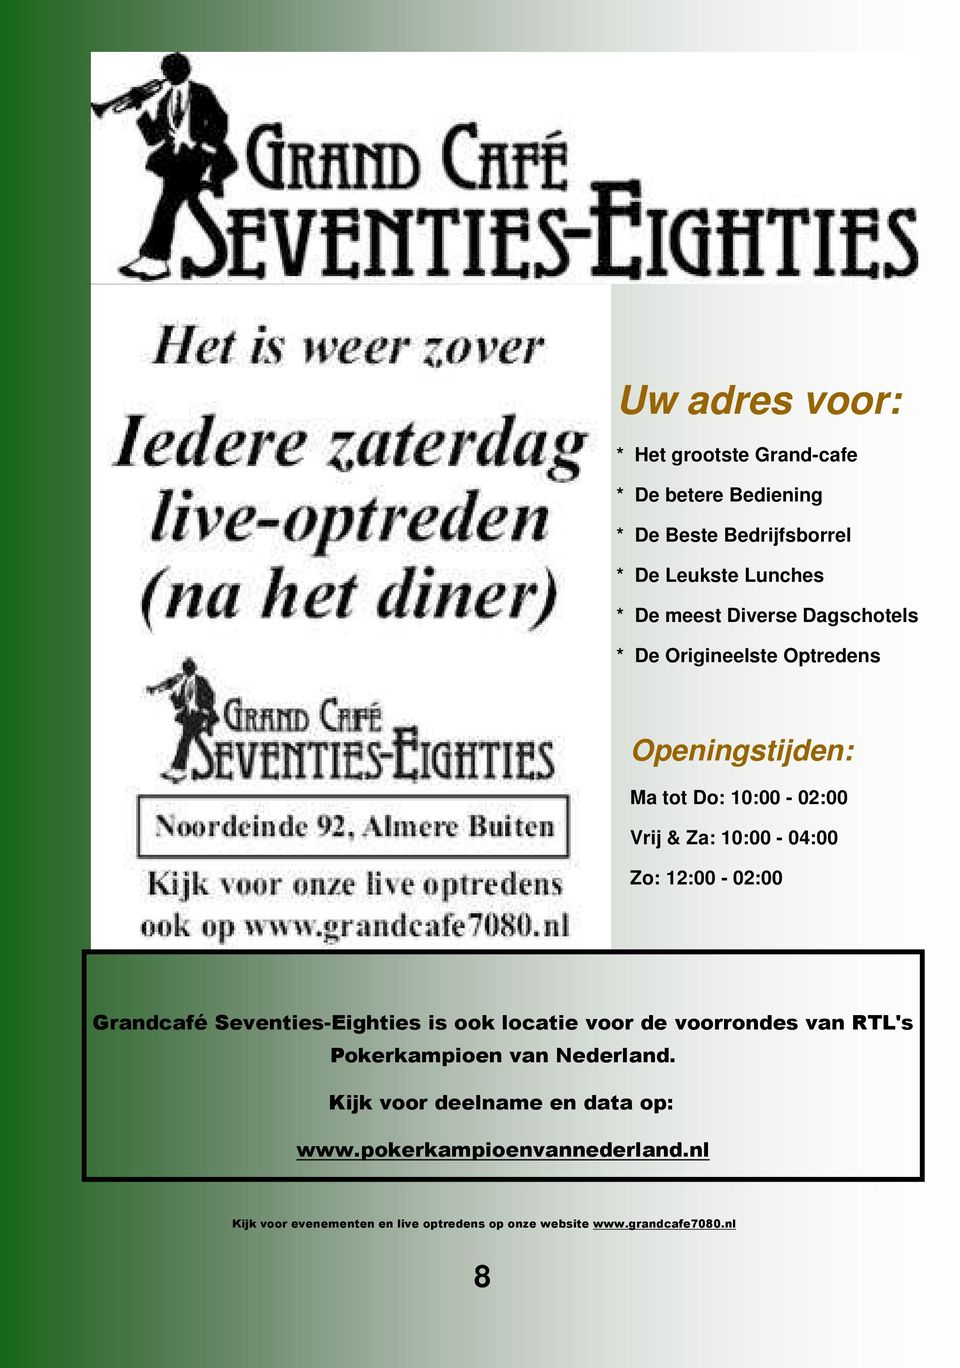 12:00-02:00 Grandcafé Seventies-Eighties is ook locatie voor de voorrondes van RTL's Pokerkampioen van Nederland.